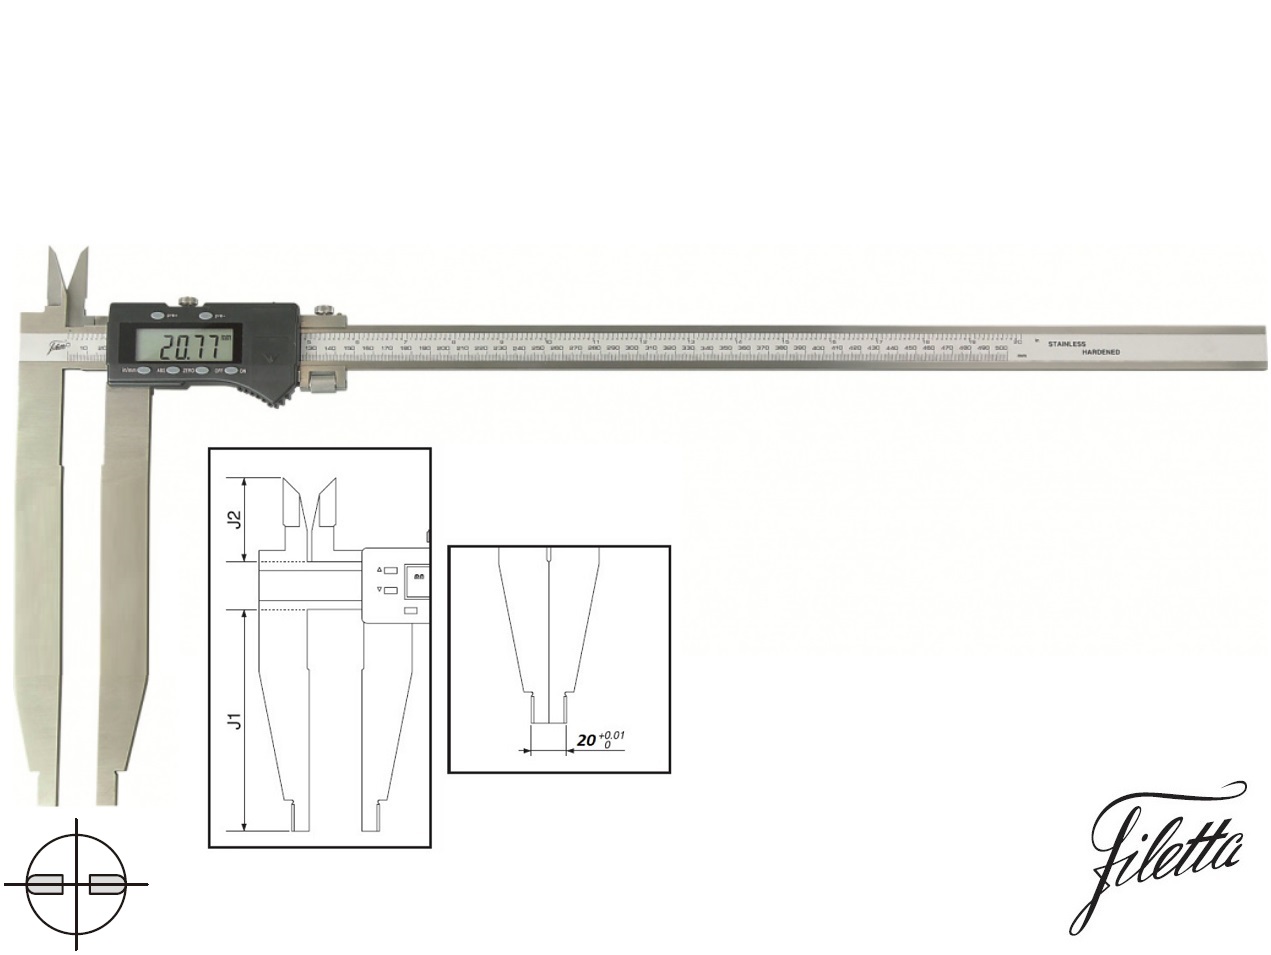 Digitální posuvné měřítko Filetta 0-600/200 mm s měřicími nožíky pro vnitřní měření